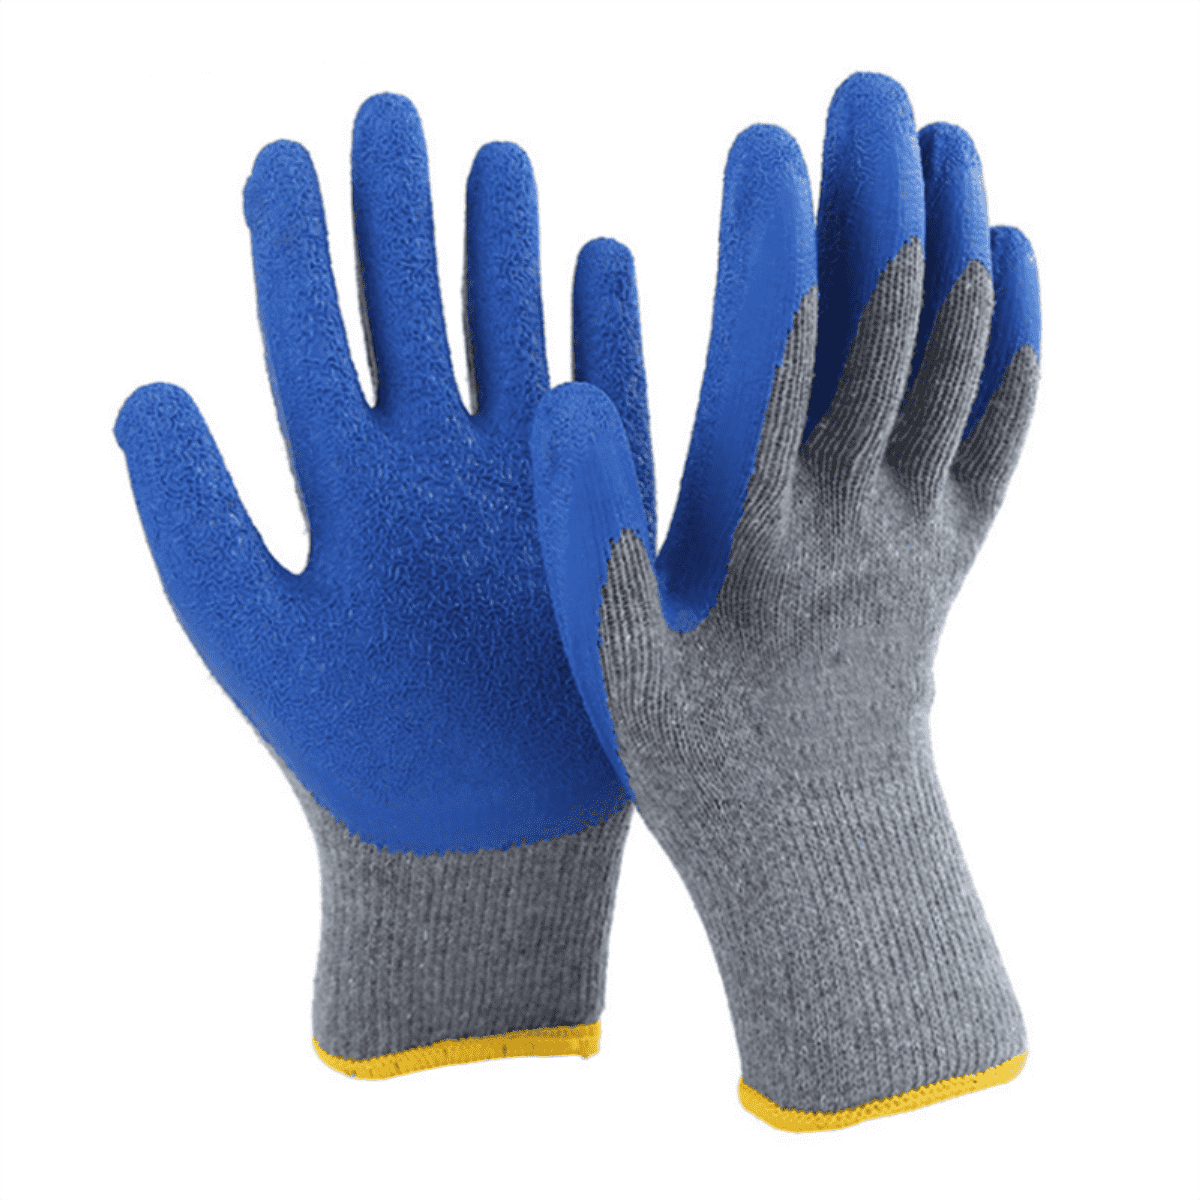 Kev Siv Tes Tiv Thaiv 10 Gauge Polyester Blue Latex Crinkle Palm Coated Gloves